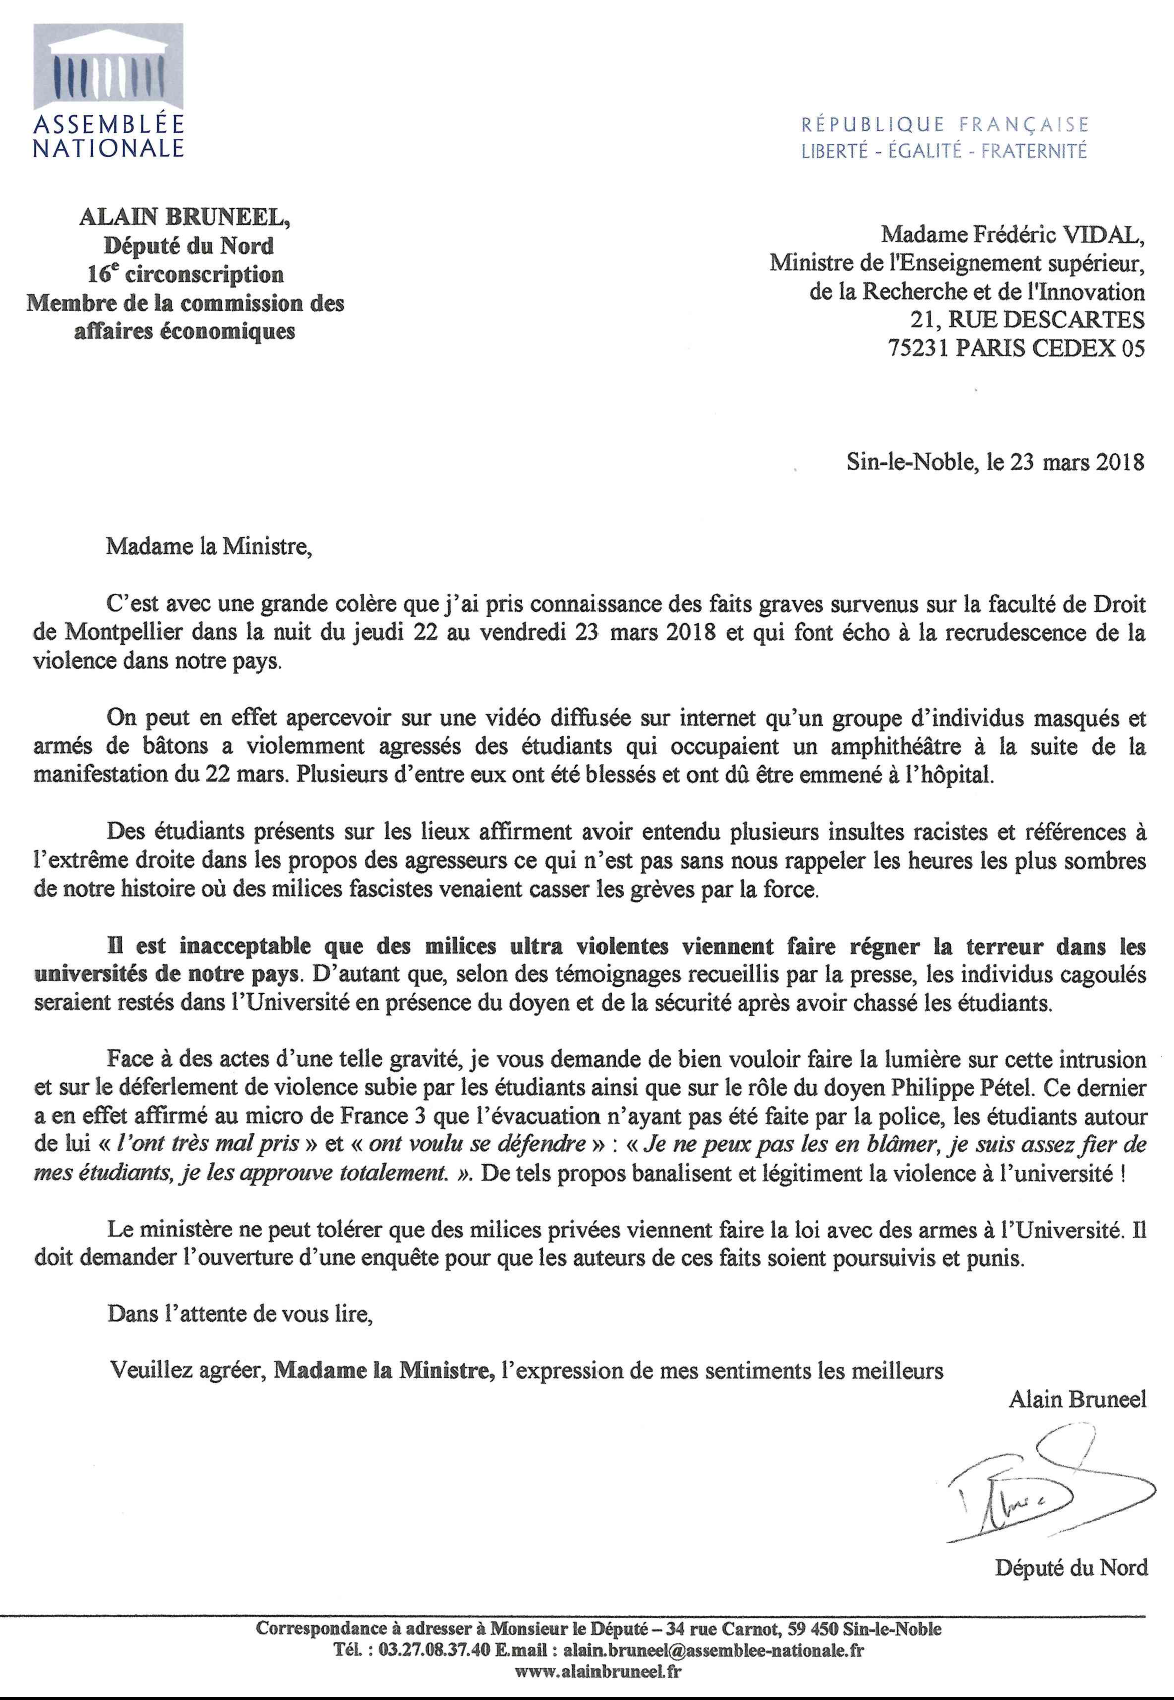 Montpellier : "Il est inacceptable que des milices viennent faire régner la terreur dans les universités" (Alain Bruneel PCF)